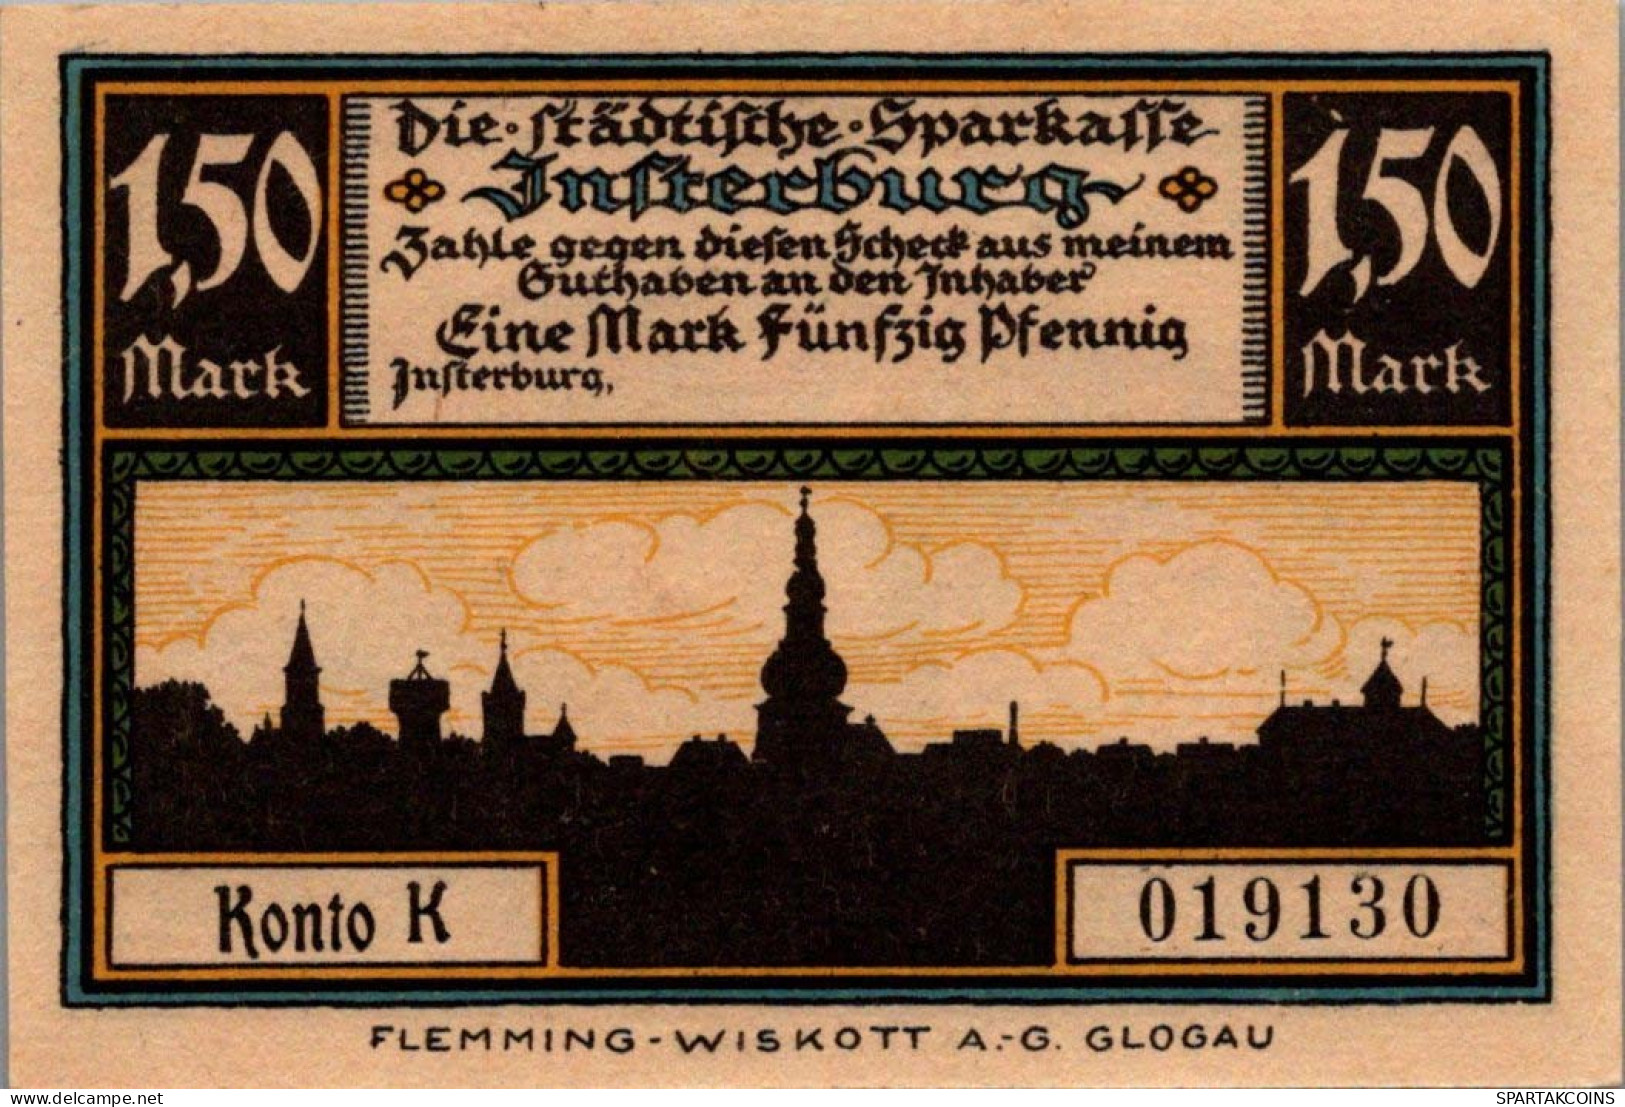 1.5 MARK 1914-1924 Stadt INSTERBURG East PRUSSLAND UNC DEUTSCHLAND Notgeld #PD136 - [11] Local Banknote Issues